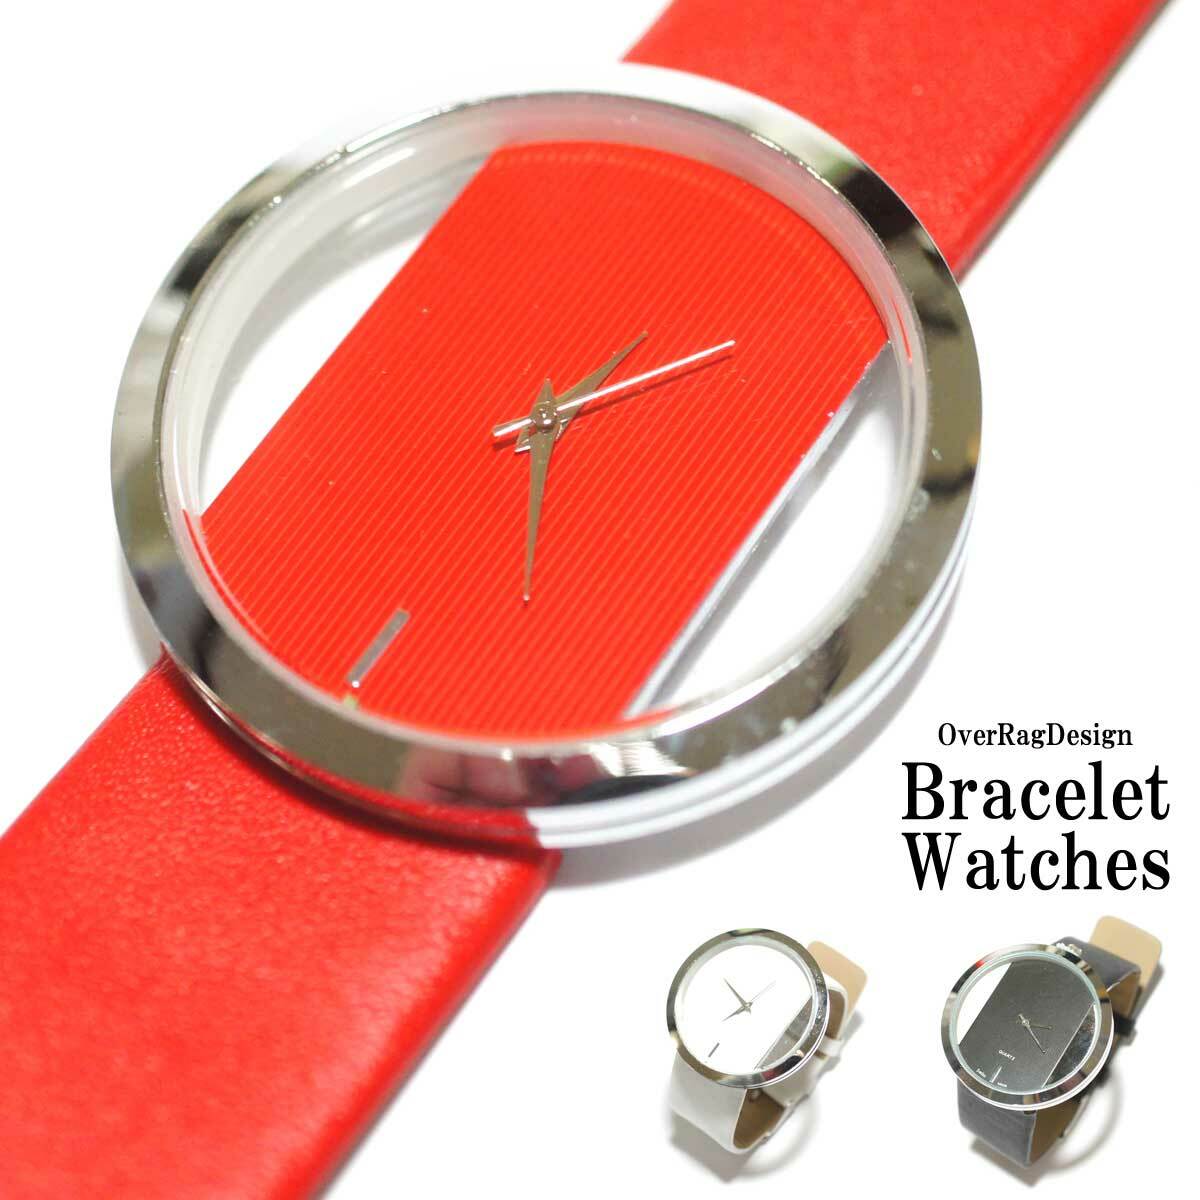 レディース時計 レディースウォッチ 腕時計 時計 ブレスレット カジュアル時計 大人時計 Puレザー ブレス時計 カジュアル時計 大人時計 可愛い時計 チープウォッチ Or1130 Overrag